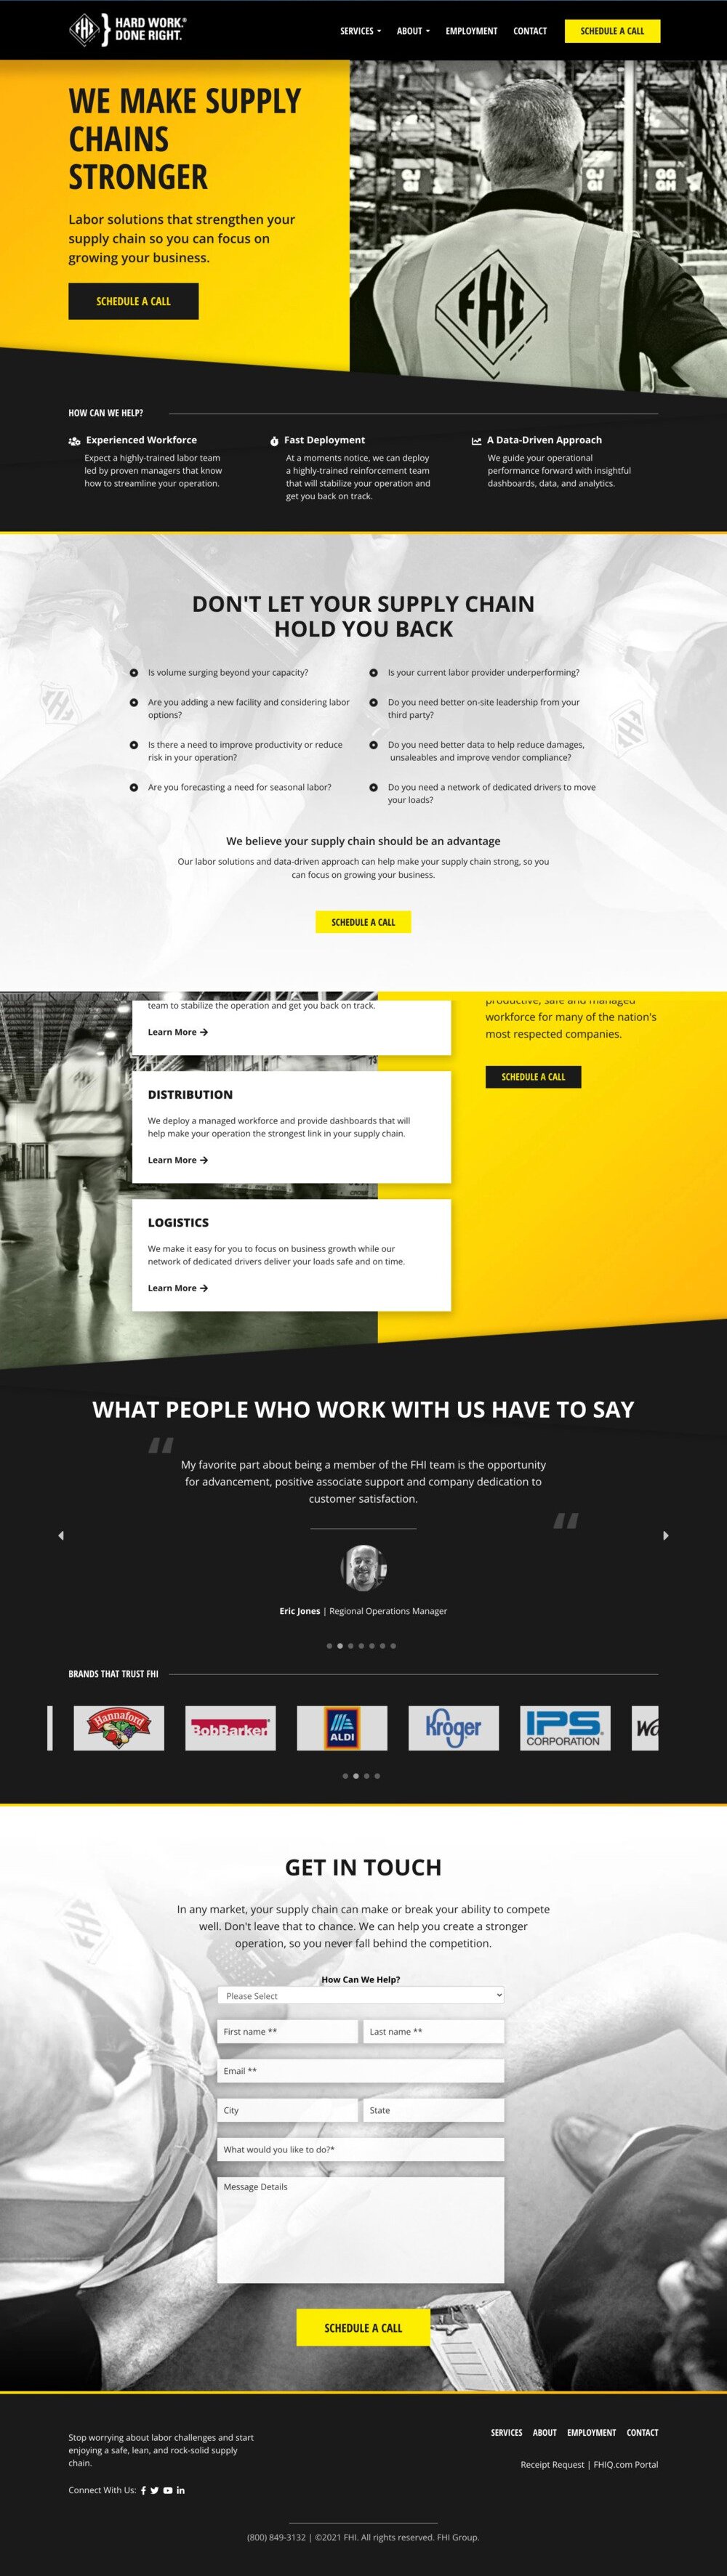 fhi homepage - full